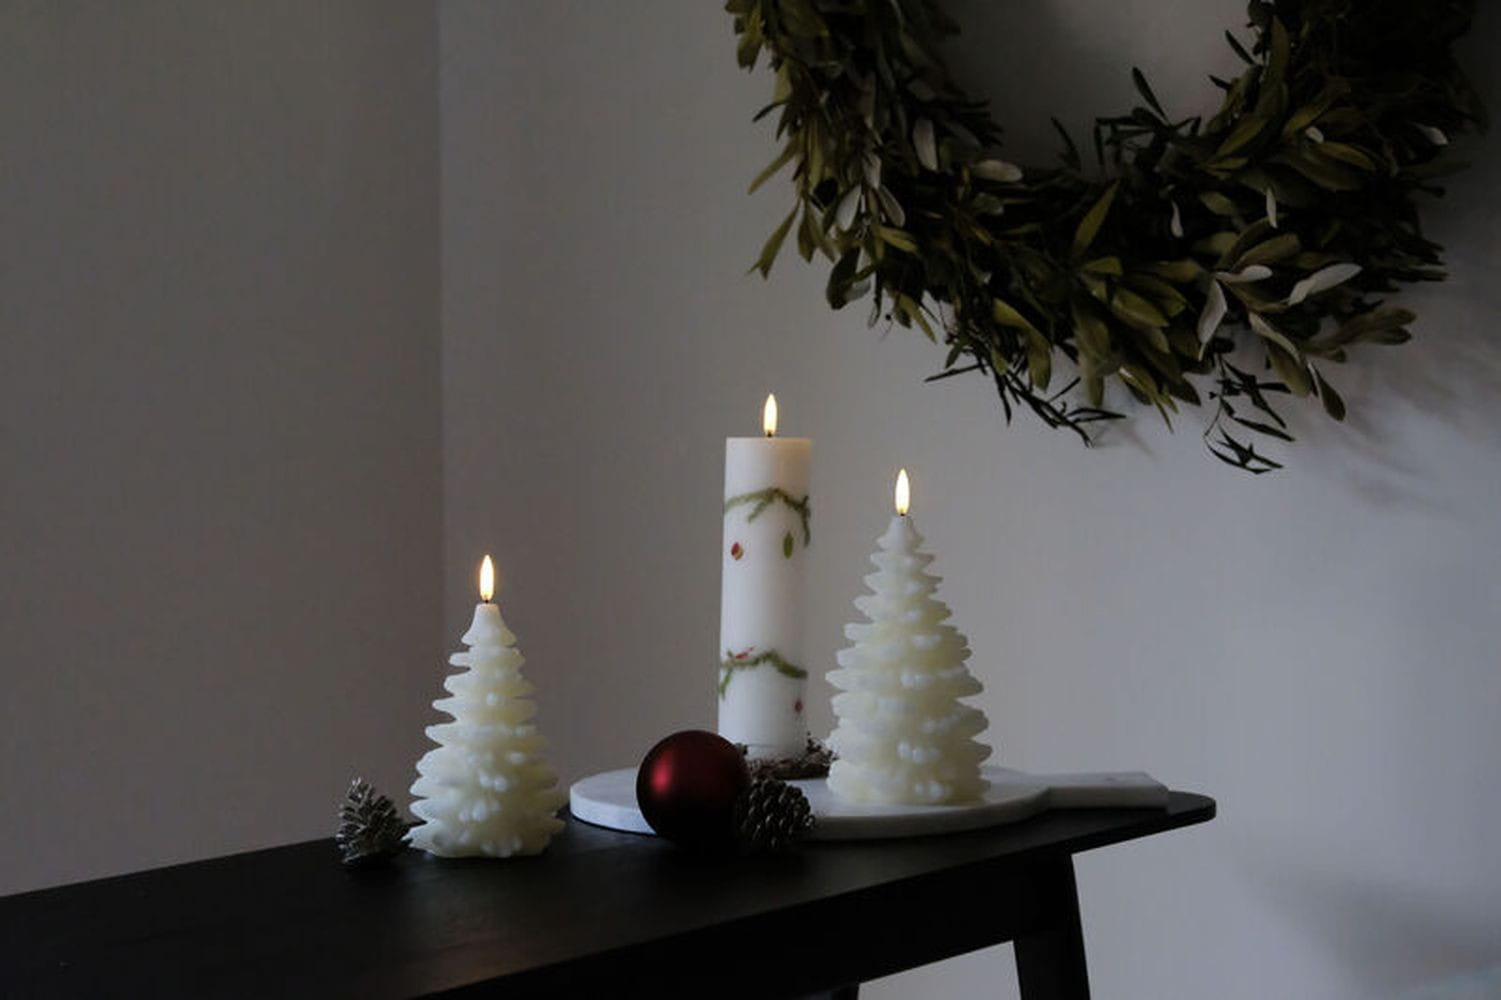 Éclairage uyuni led arbre de Noël H 15 cm, blanc nordique